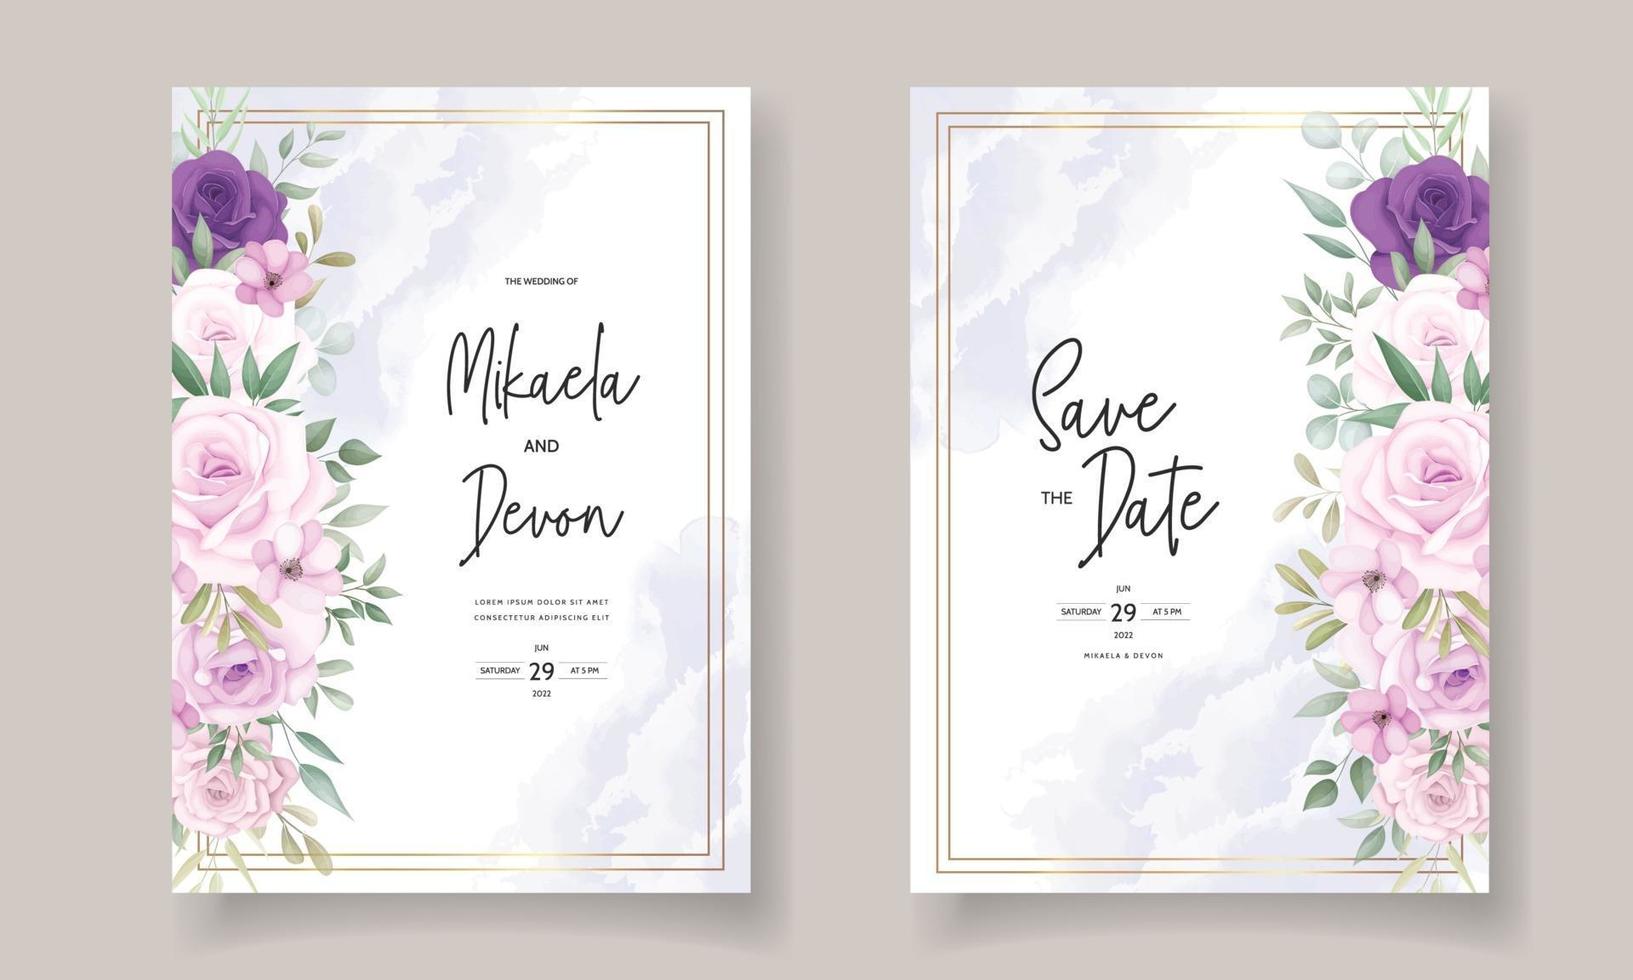 vackra bröllopsinbjudan med vackra blomsterprydnader vektor